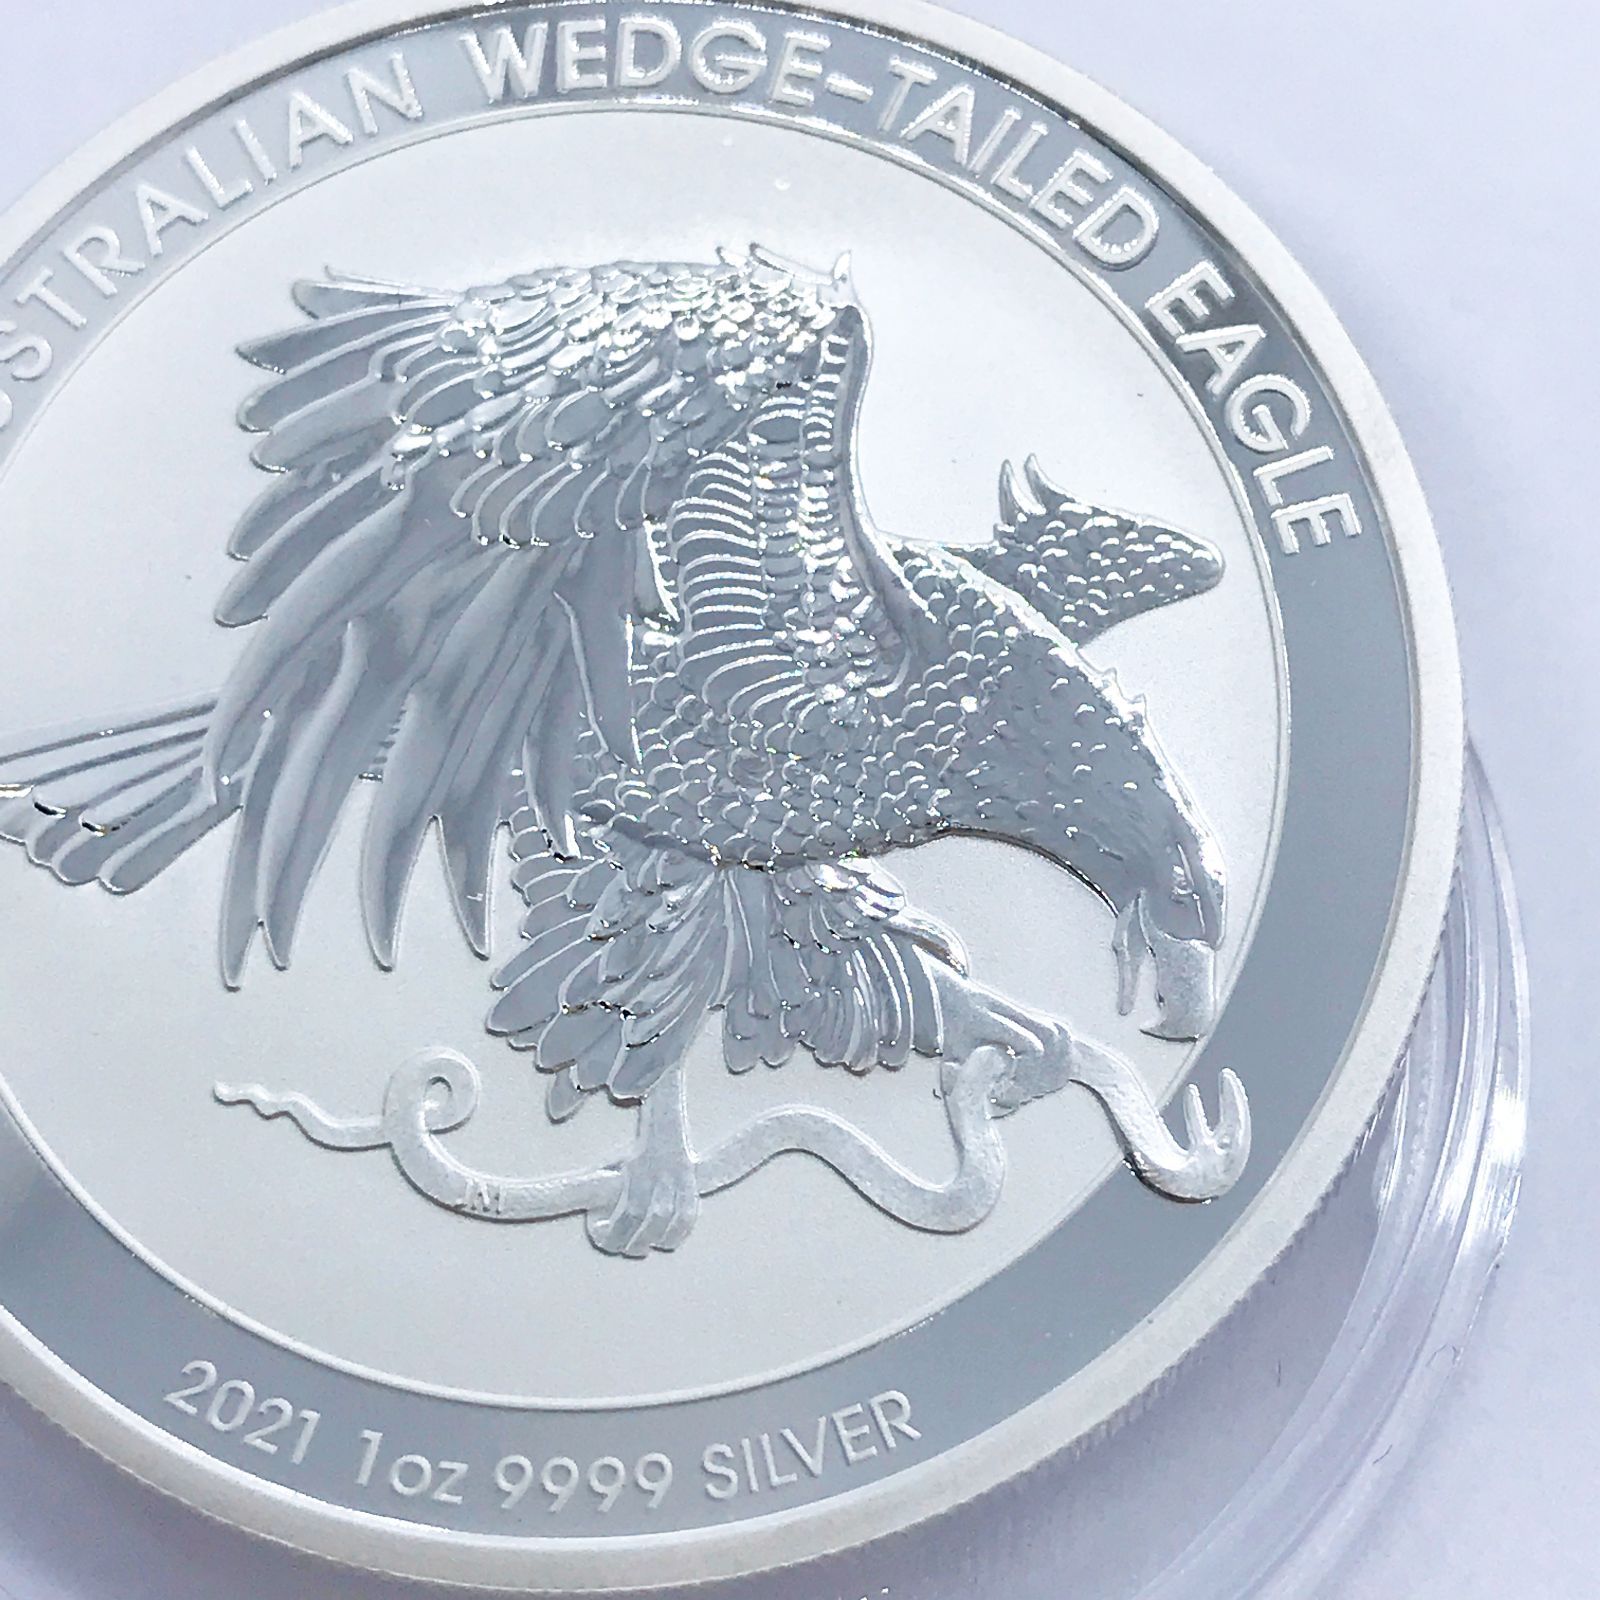 2021年 ウェッジテールイーグル 純銀 9999 1オンス銀貨 パースミント